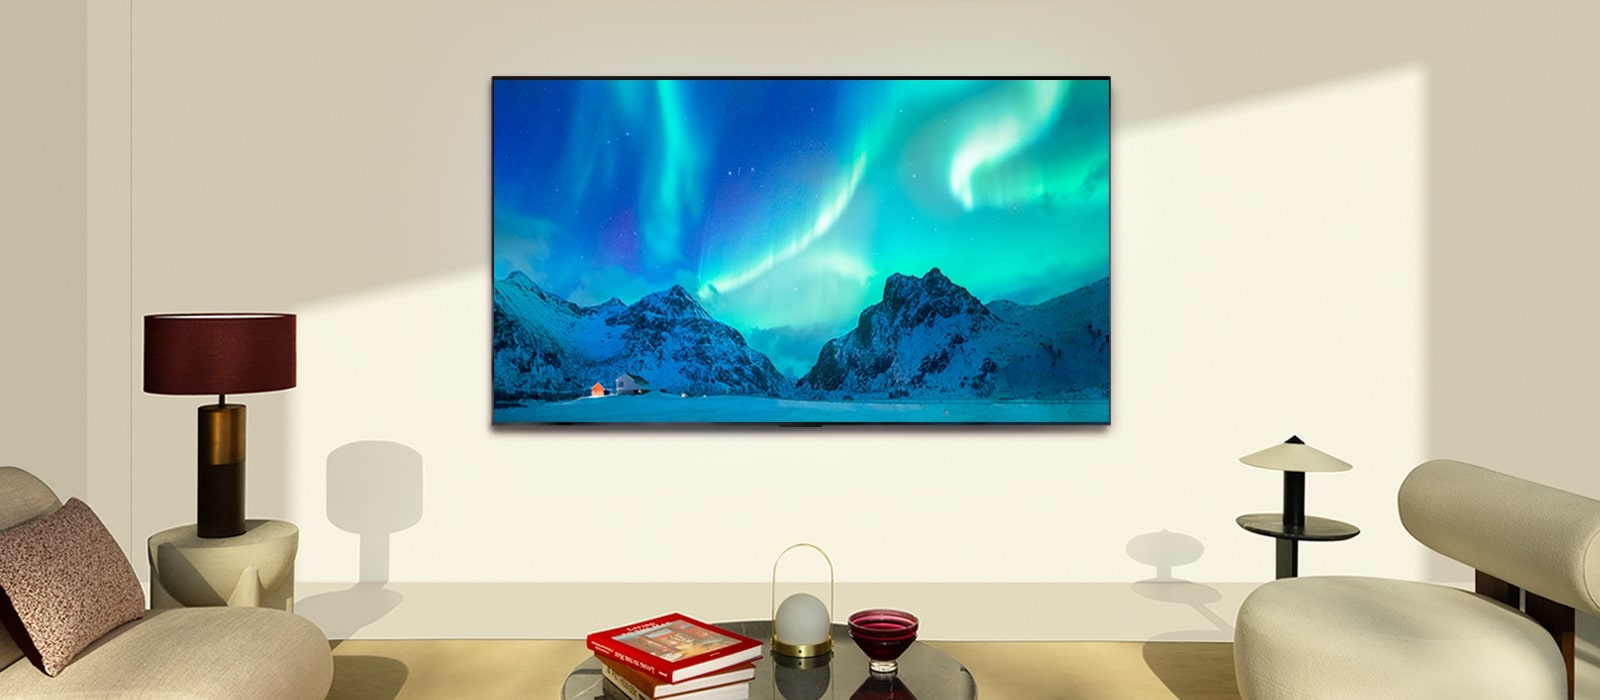 LG OLED TV ja LG Soundbar modernissa olohuoneessa päivällä. Aurora borealis -näyttökuva näytetään ihanteellisilla kirkkaustasoilla.